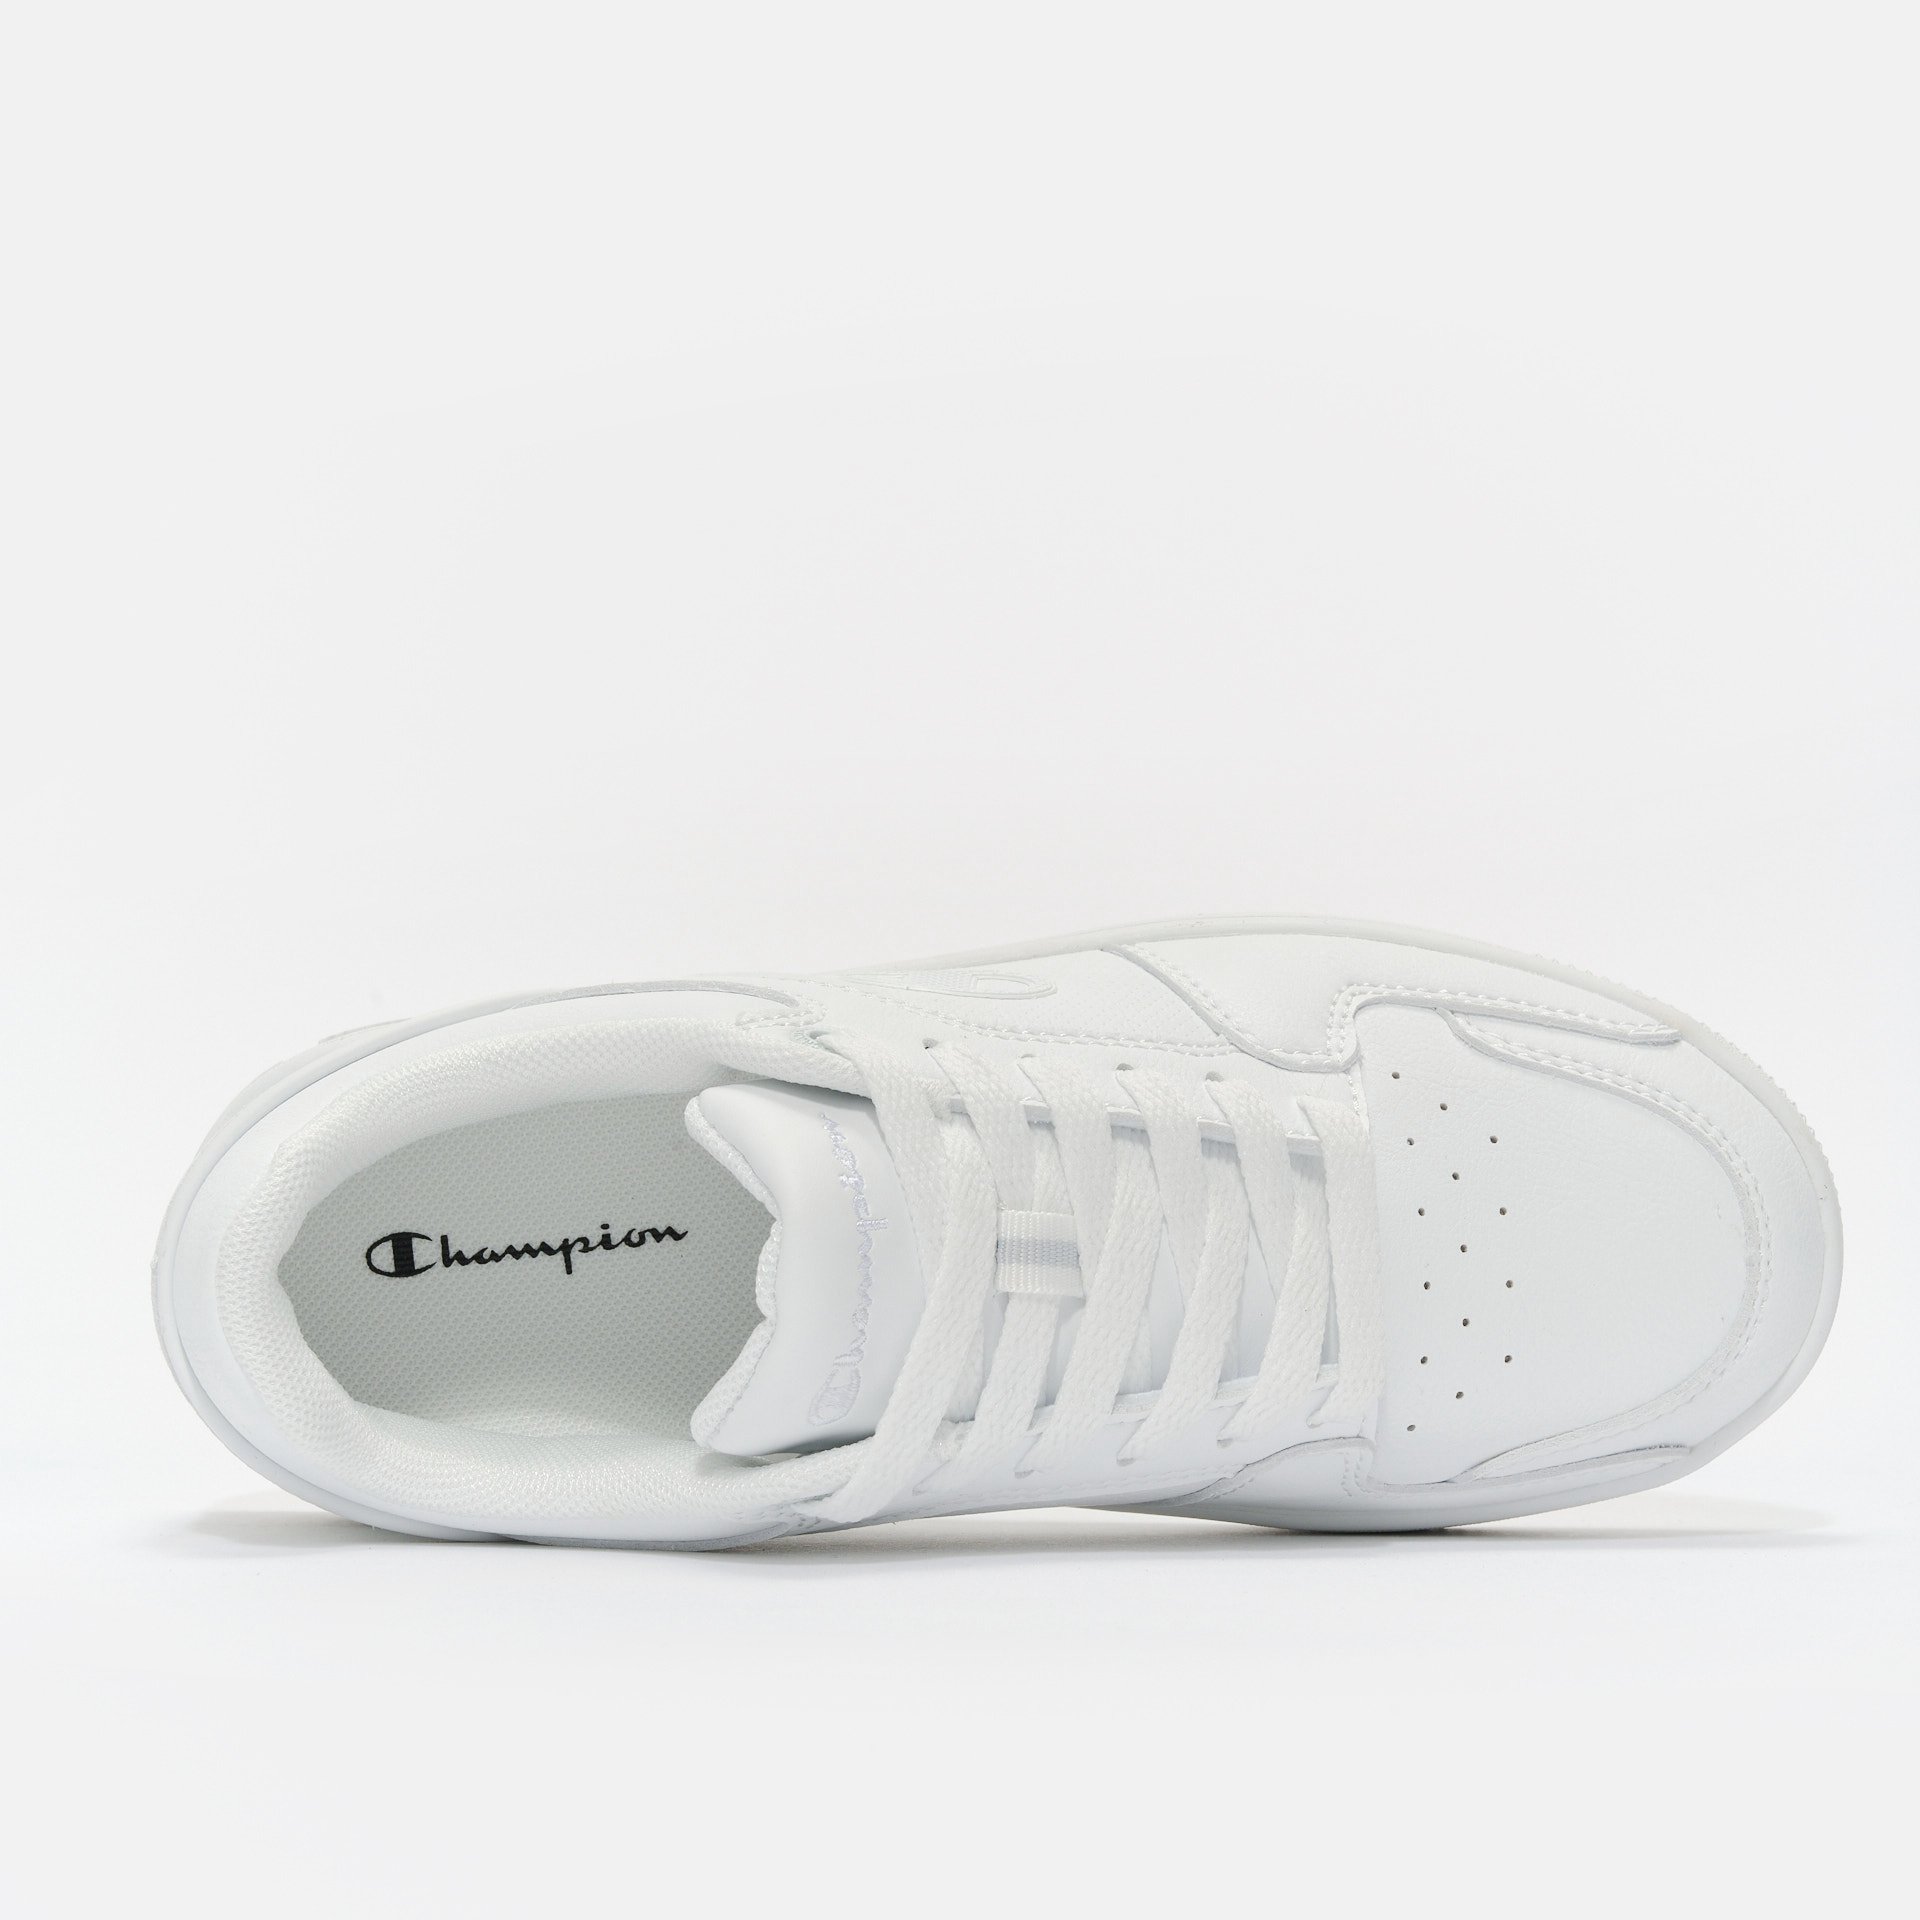 Champion Rebound 2.0 Low Cut Sneakers Triple White